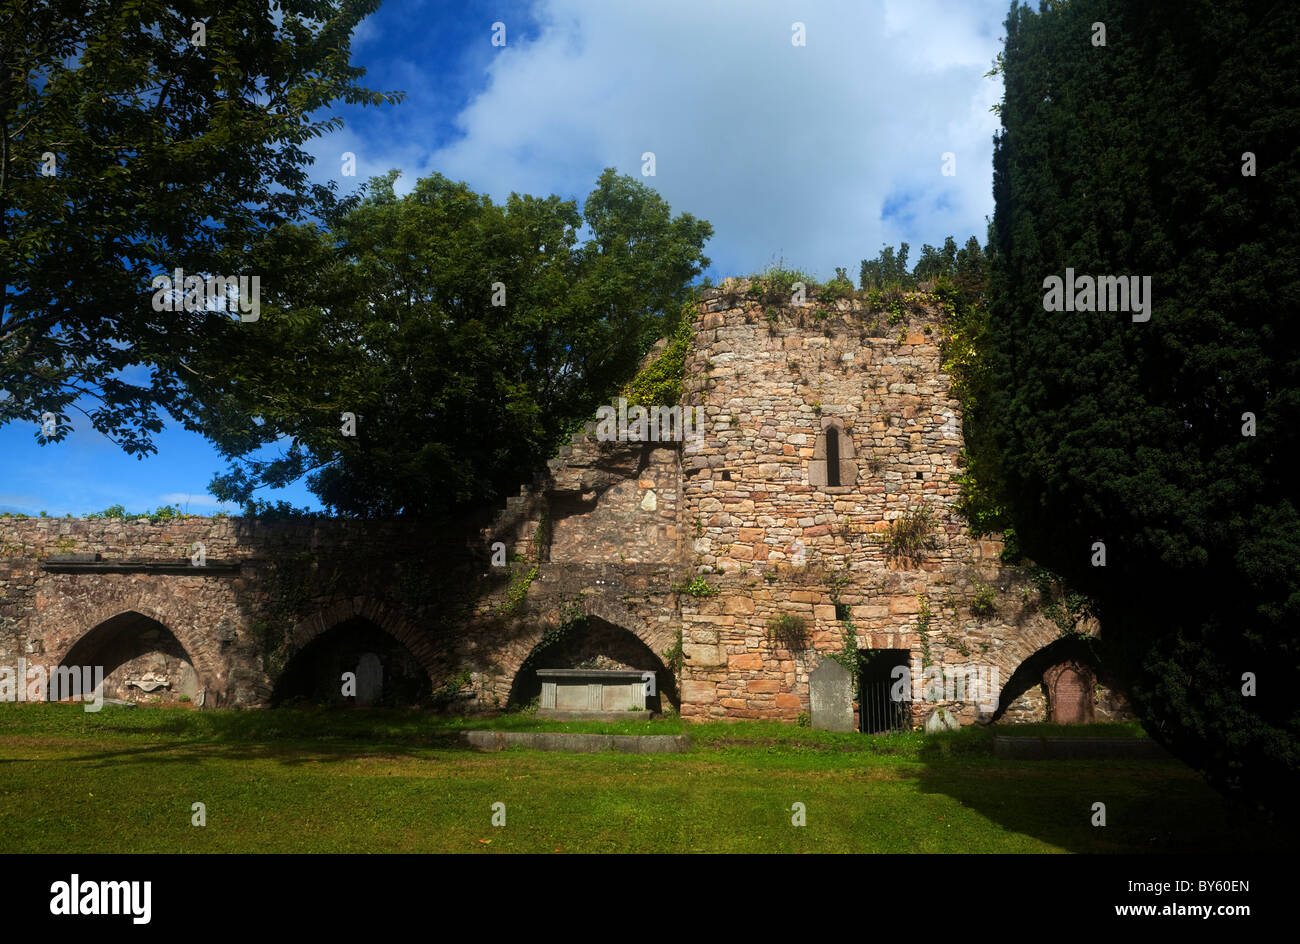 Les murs de la ville du 14ème siècle dans l'enceinte de l'église St Mary, Clonmel, comté de Tipperary, Irlande Banque D'Images